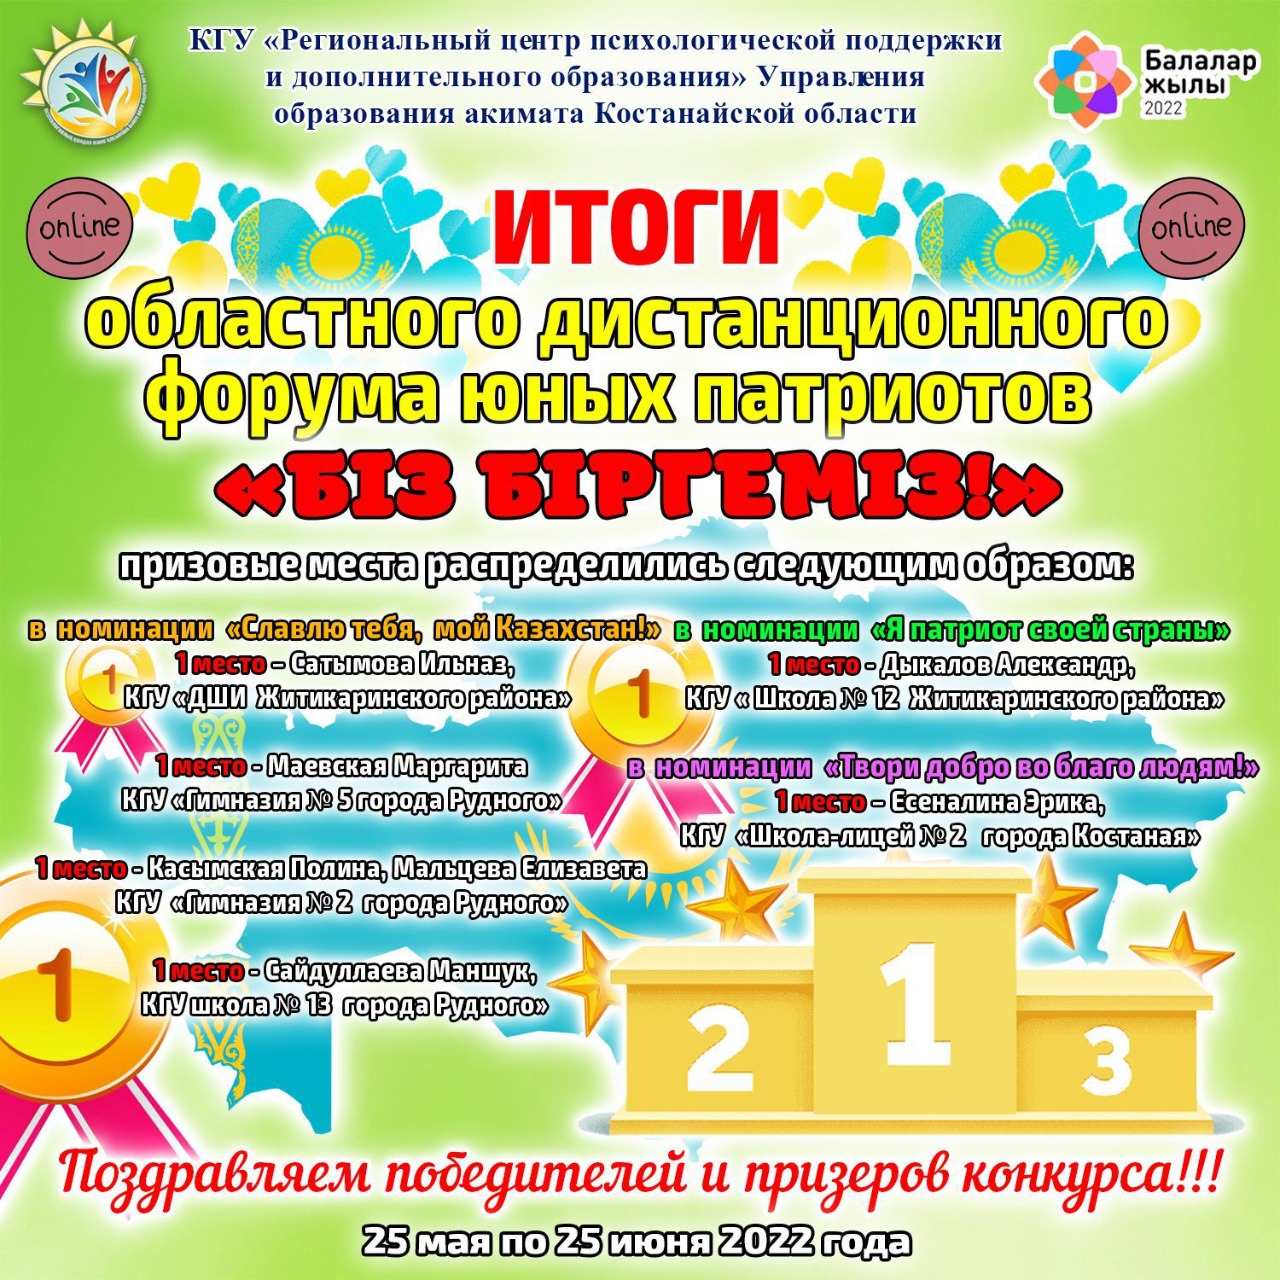 Итоги областного дистанционного форума юных патриотов «Біз біргеміз!», посвященного Году детей.